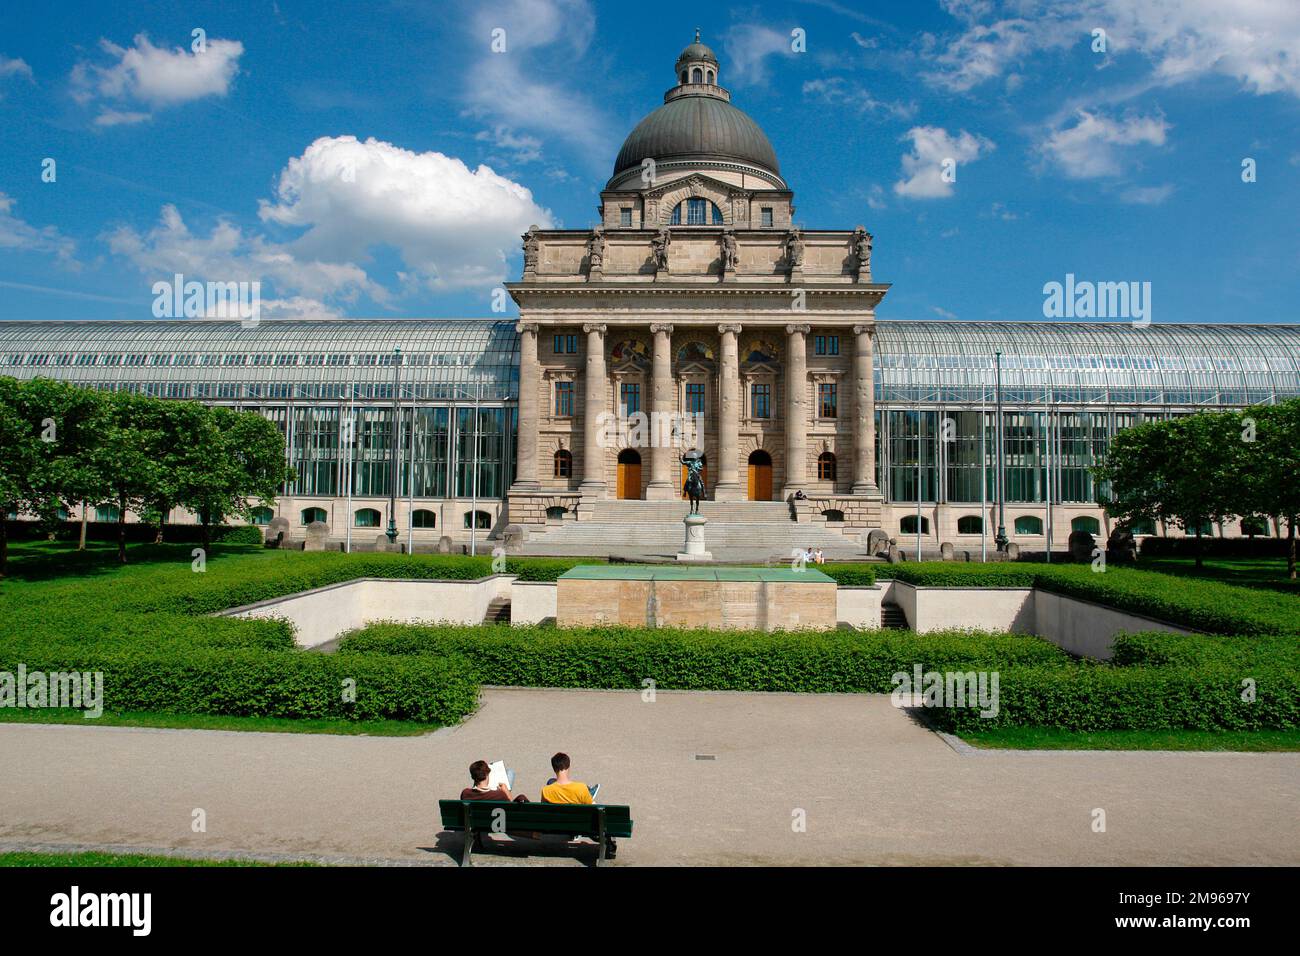 Blick auf die Bayerische Staatskanzlei in München. Sie umfasst das Büro des bayerischen Ministerpräsidenten und der bayerischen Landesregierung sowie das bayerische Staatsministerium für Bundes- und Europaangelegenheiten. Stockfoto